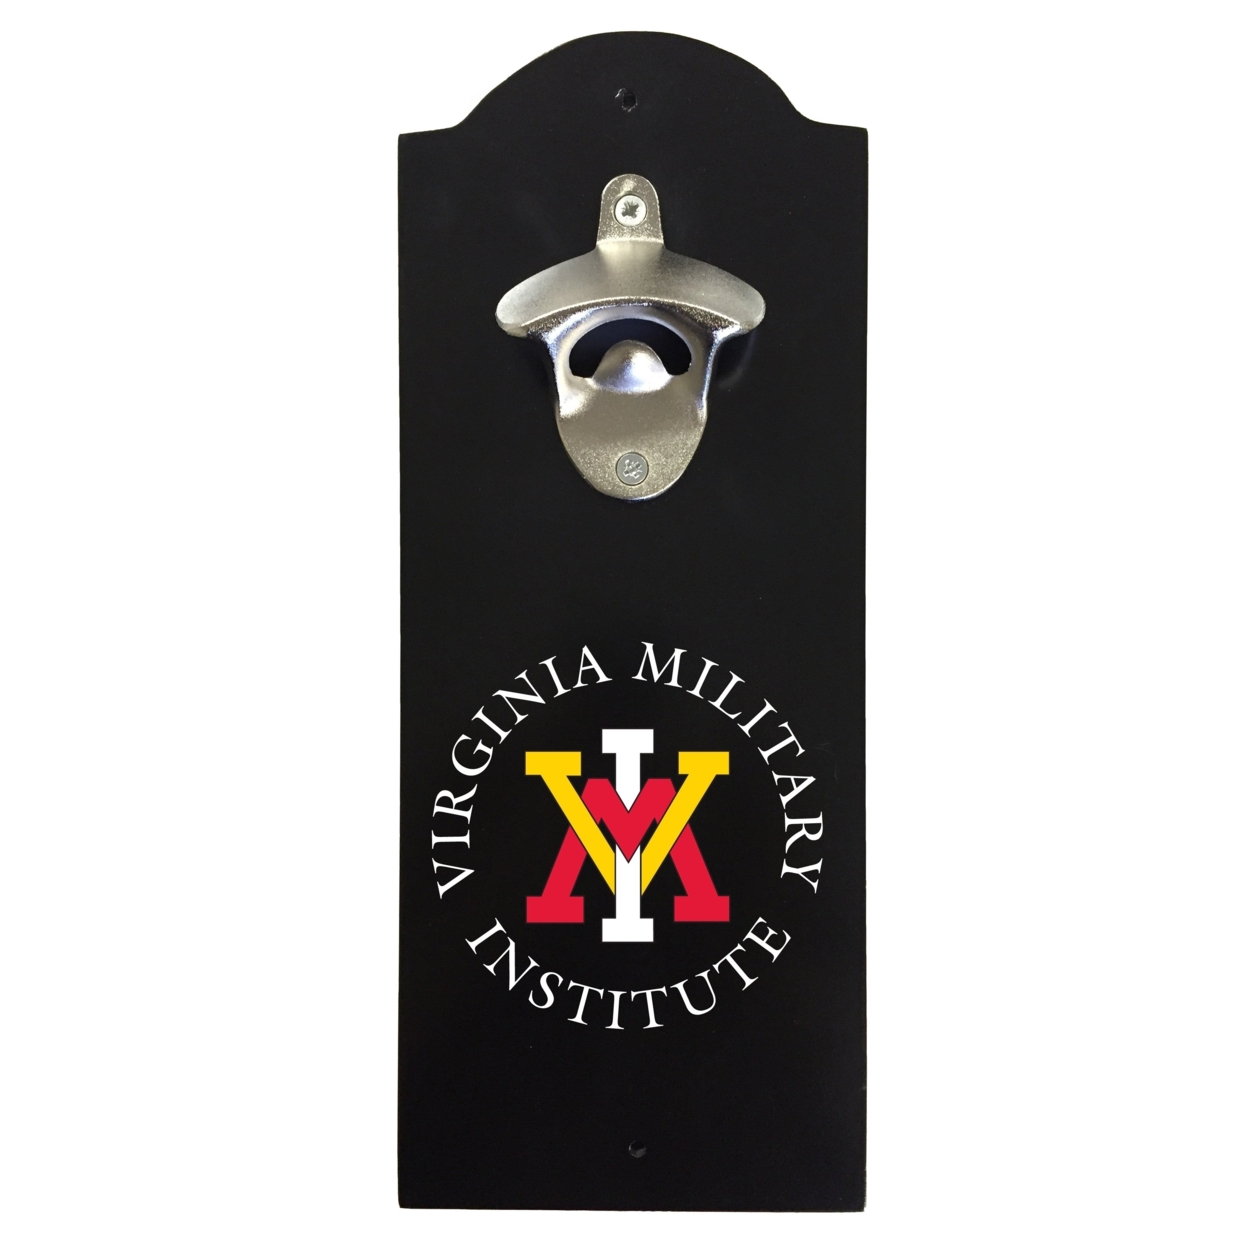 VMI Keydets Wall Mounted Bottle Opener